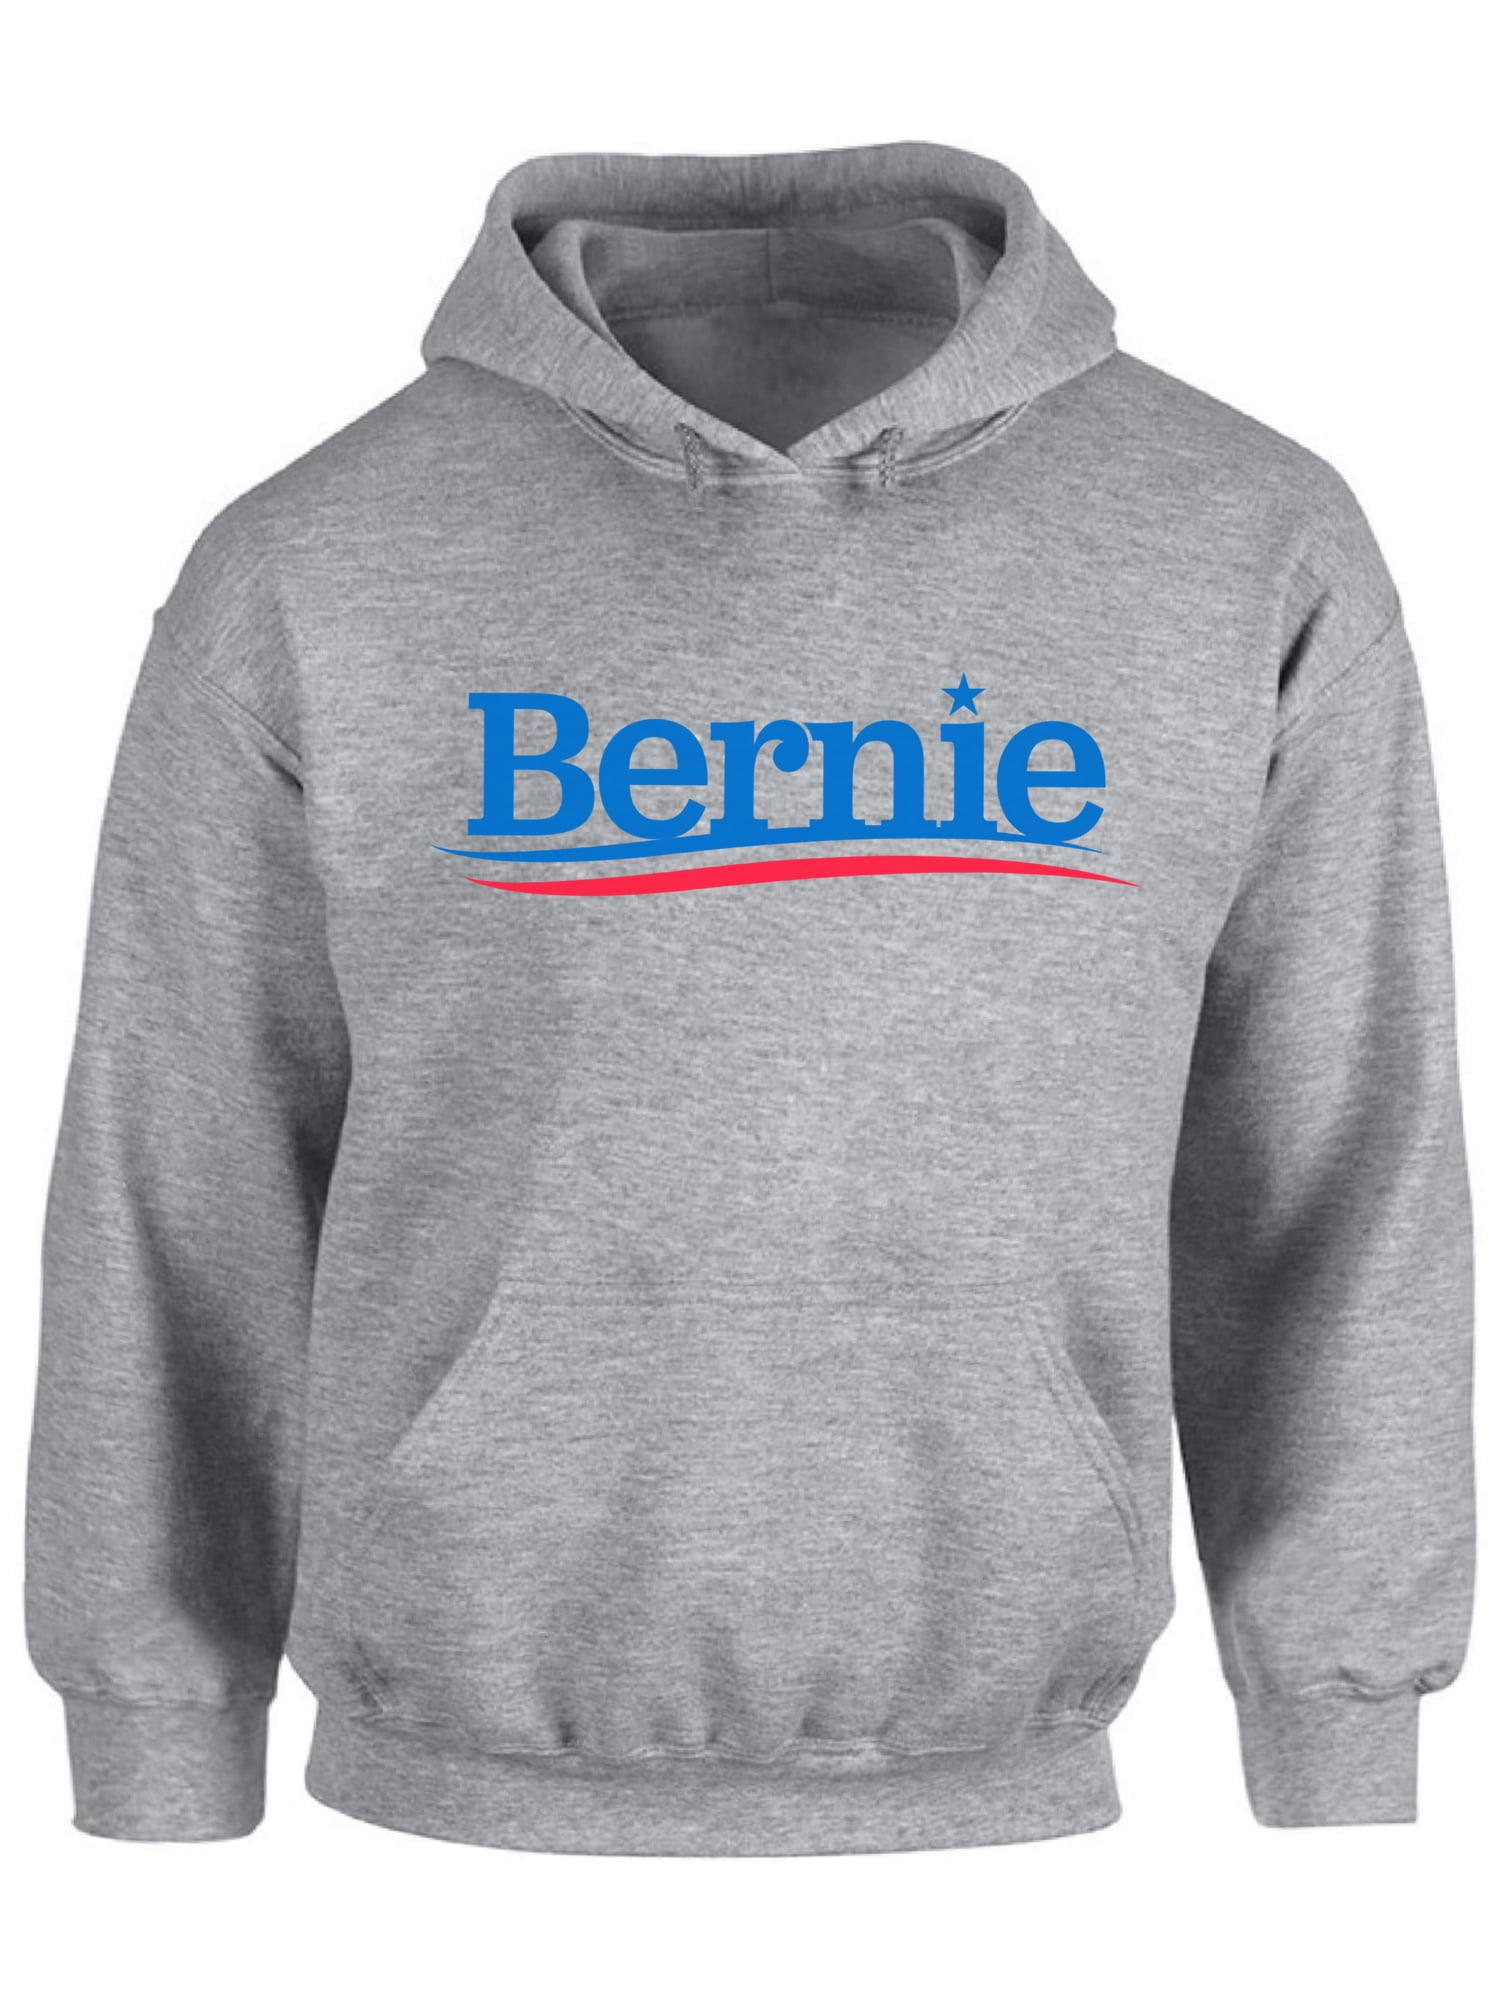 Men's Bernie 2020 Red Raglan Hoodie sweater Elections President Sanders American 